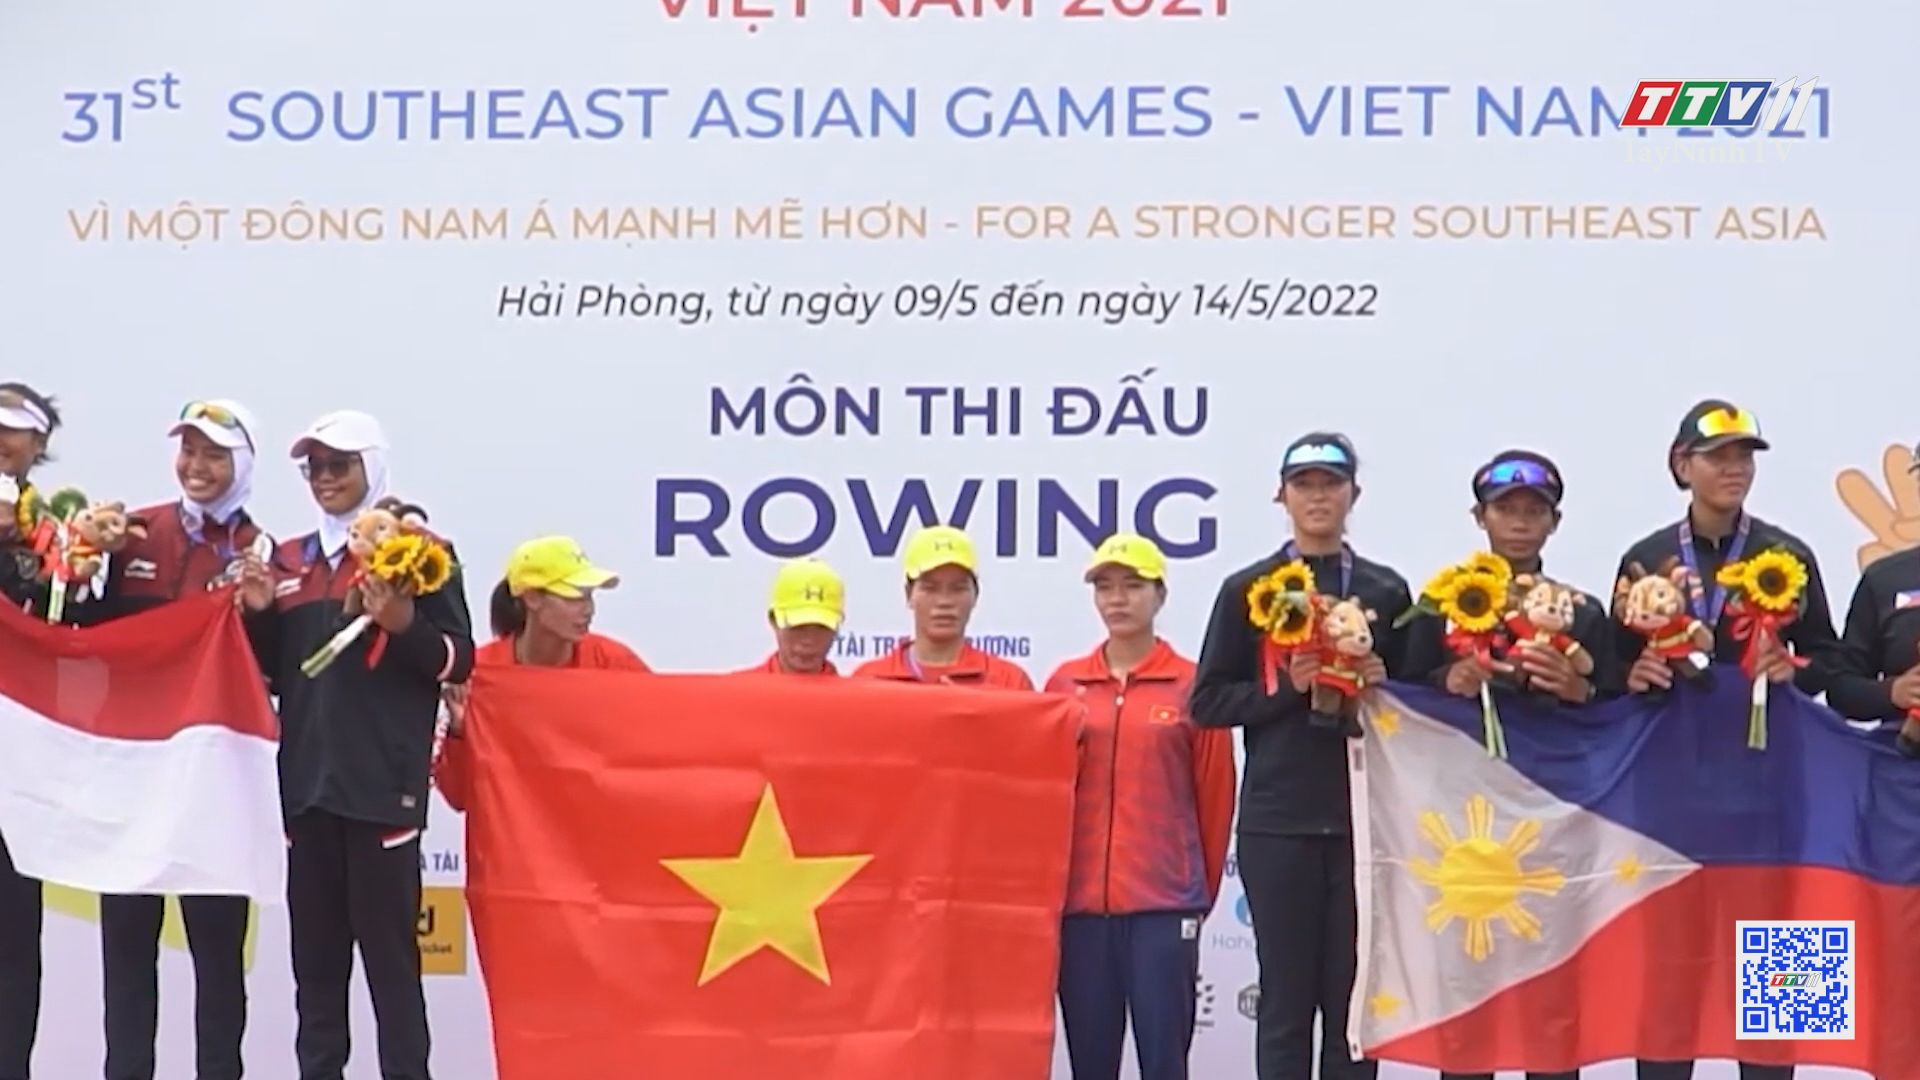 Đội tuyển Rowing Việt Nam đã giành được 